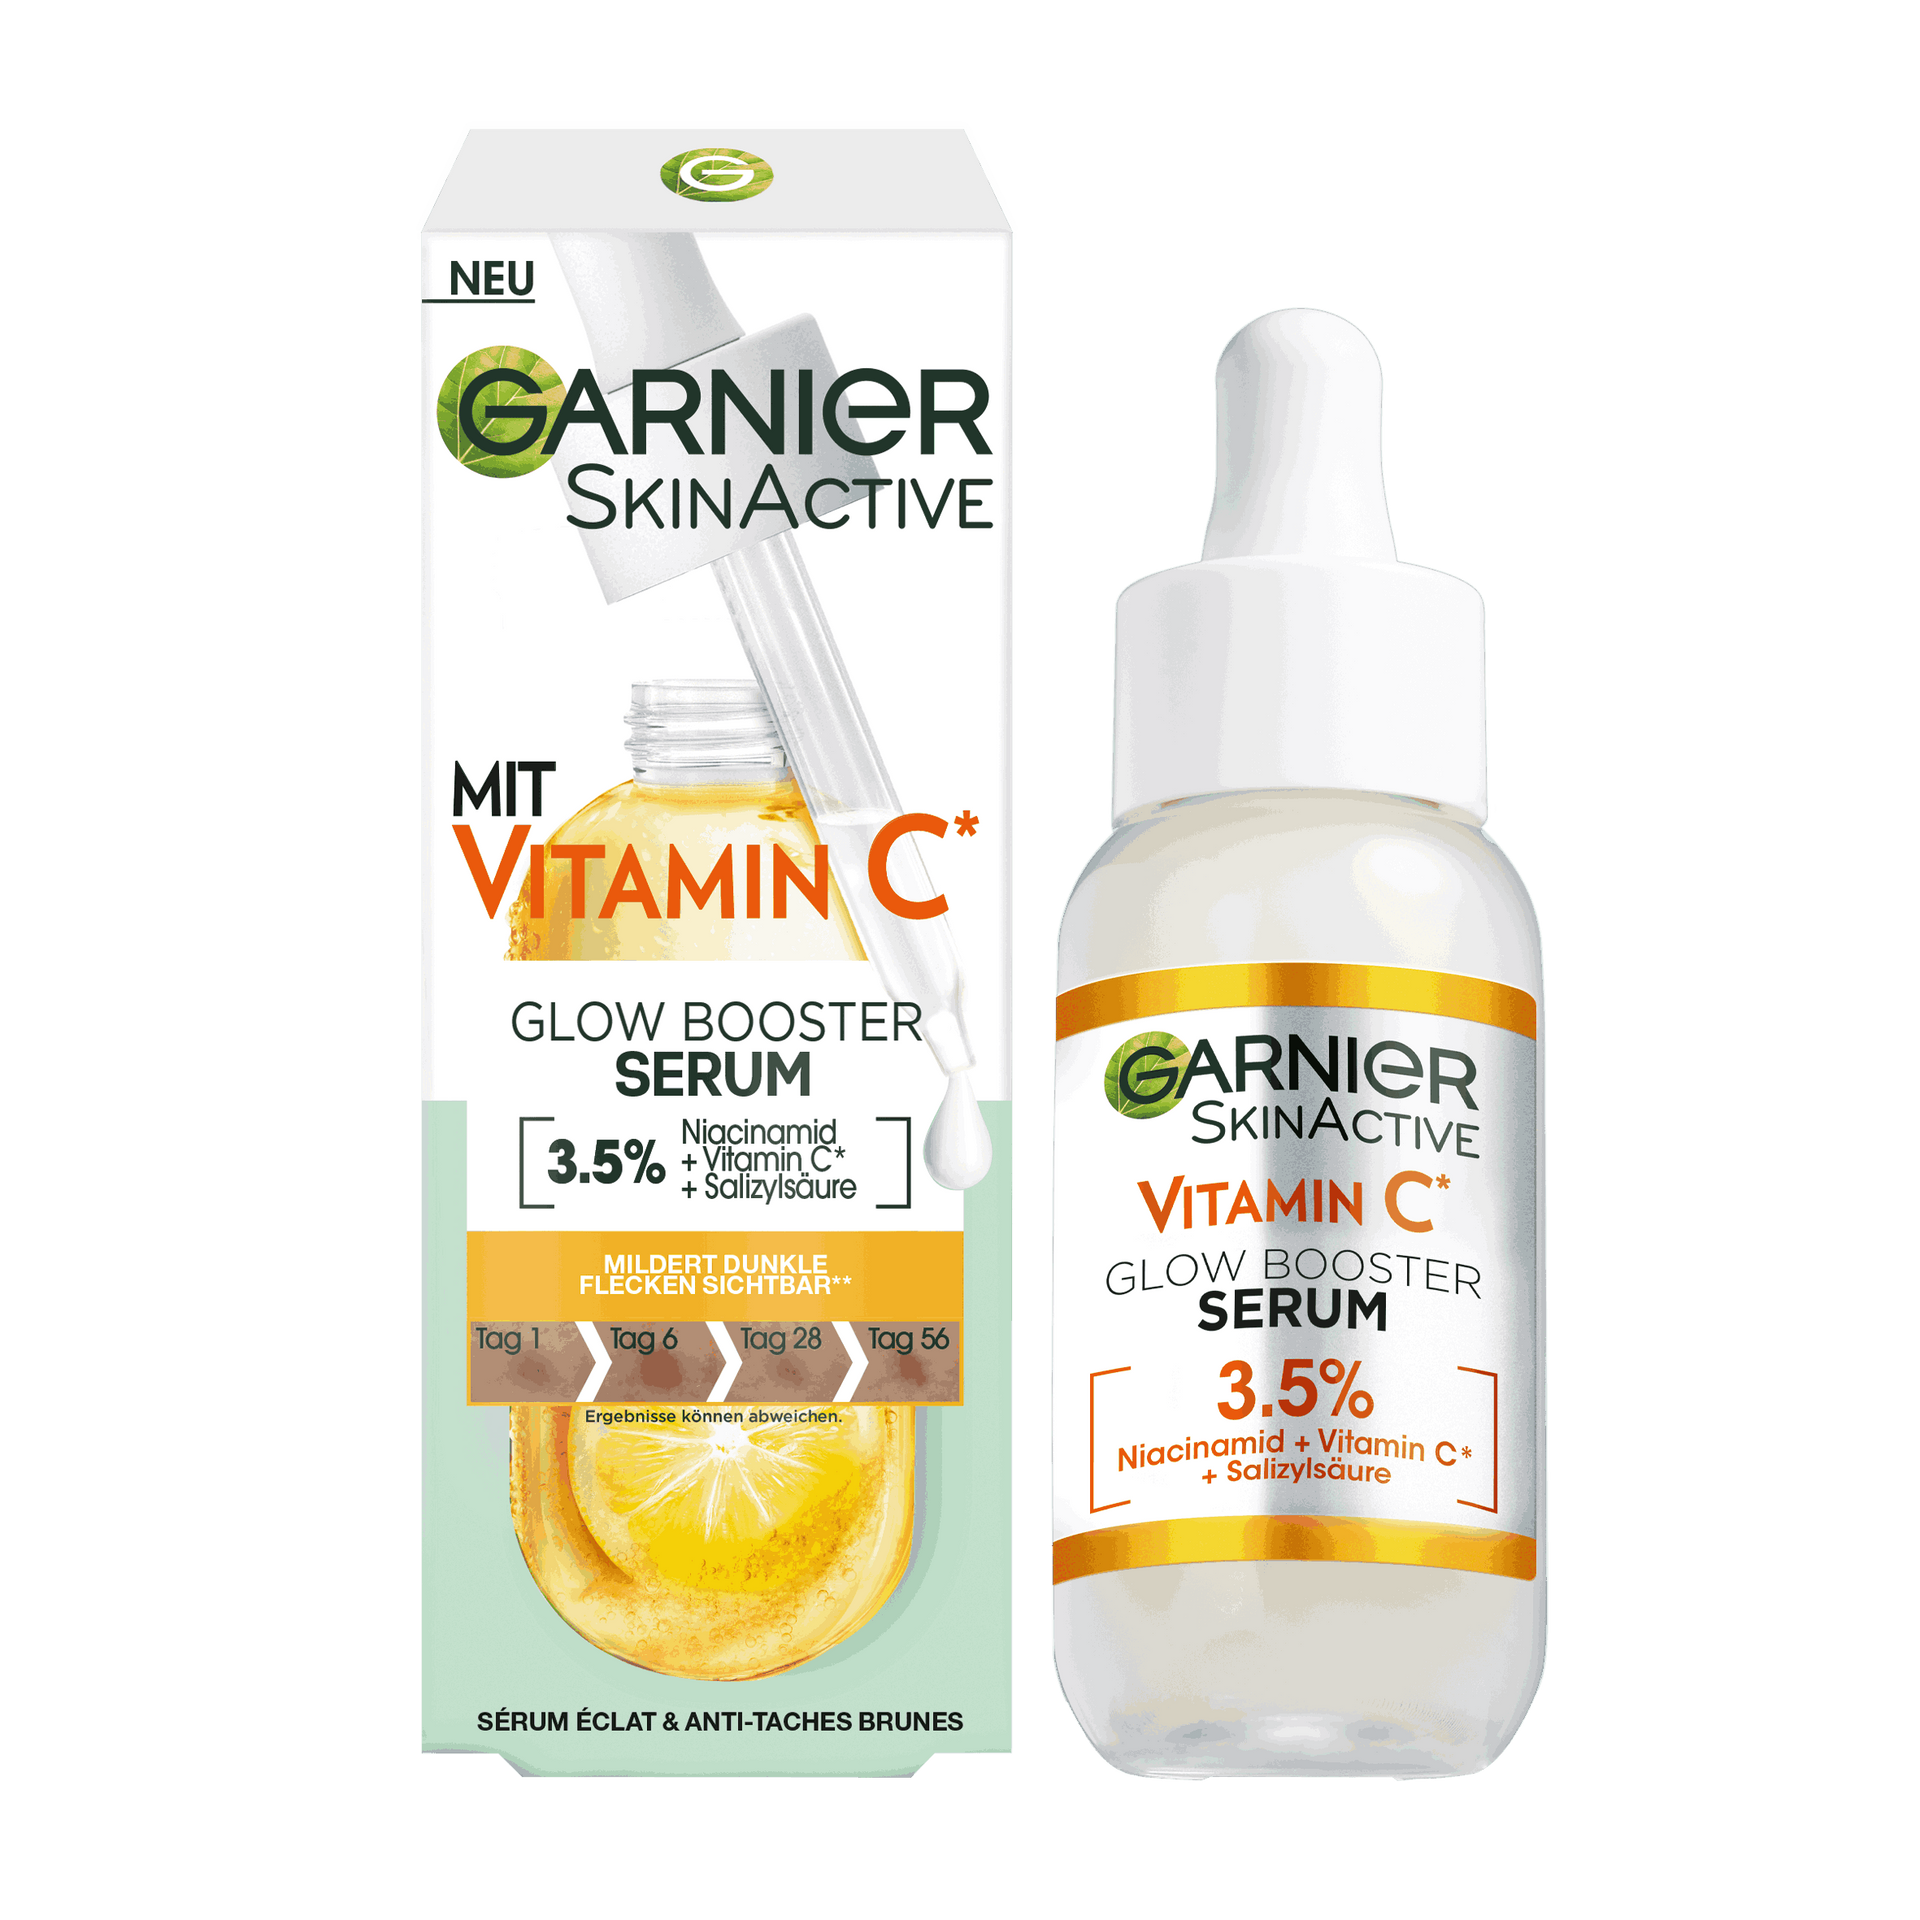 gesichtspflege gesichtspflege marken vitamin c garnier vitamin c glow booster serum mit 3 5 niacinamid vitamin c salizylsaeure